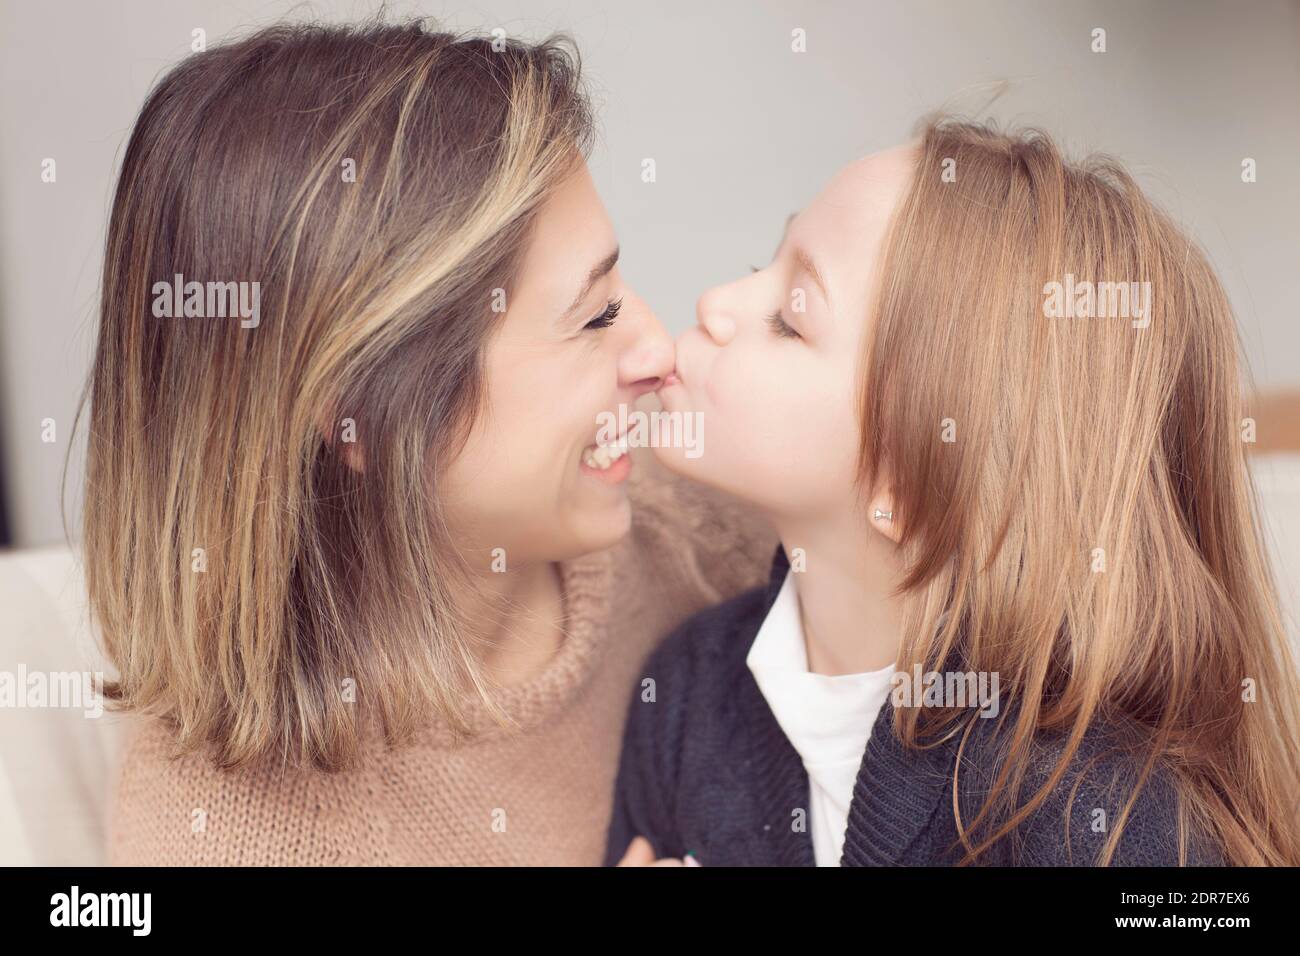 Skinny Girls Kissing